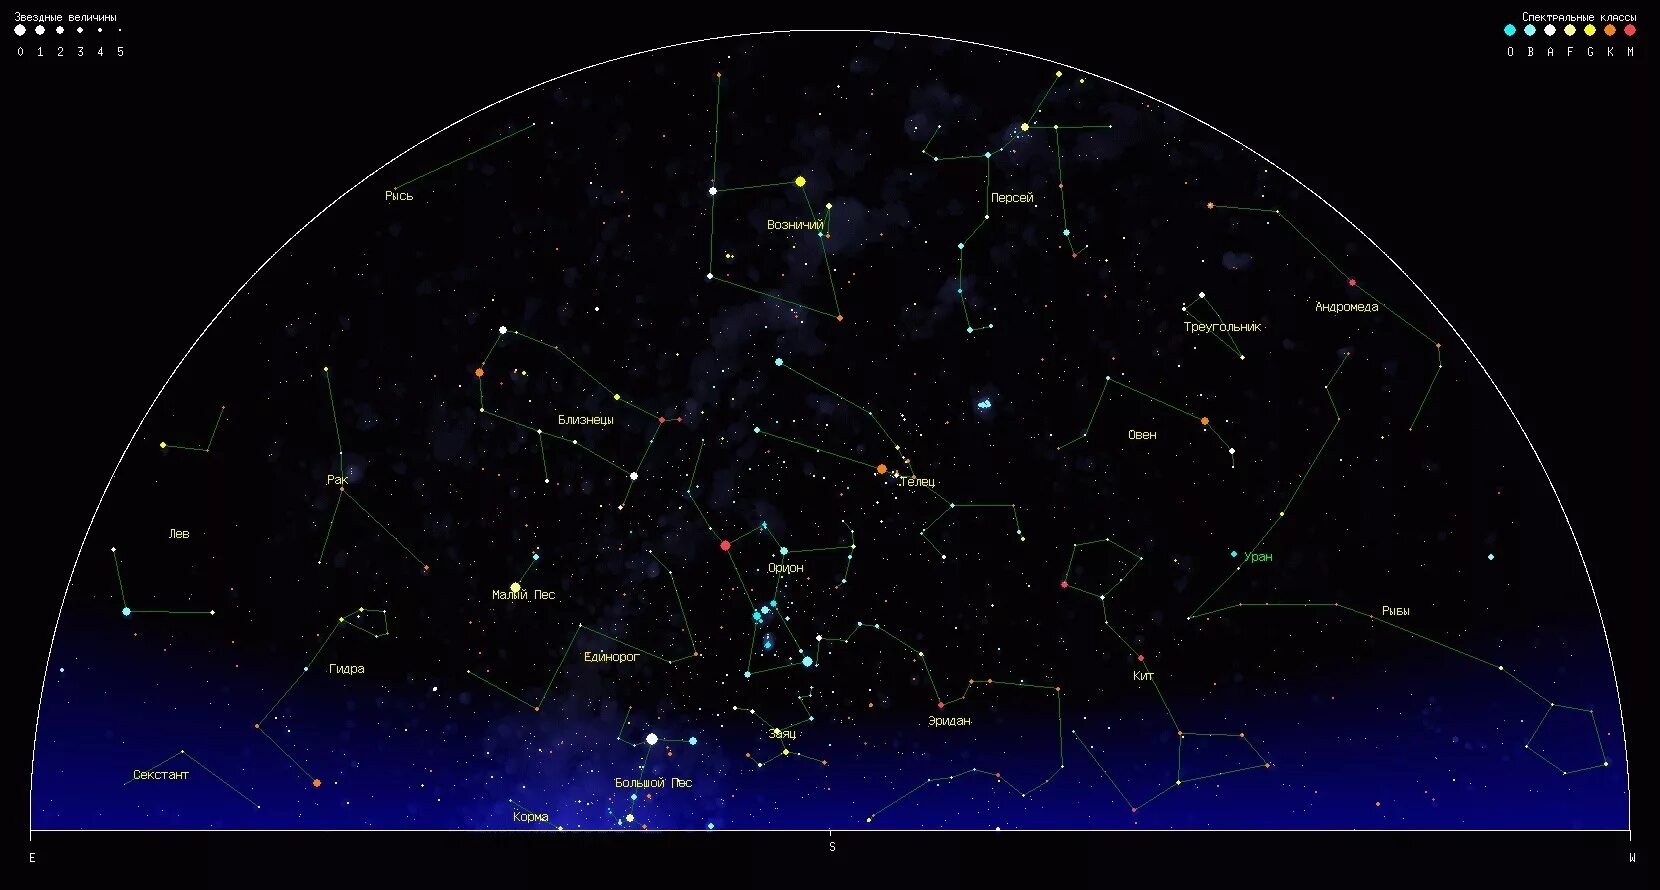 Звездное небо какие созвездия. Созвездия летнего неба Северного полушария. Карта звёздного неба Северное полушарие большая Медведица. Орион на карте звездного неба Северное полушарие. Видимые созвездия Северного полушария.